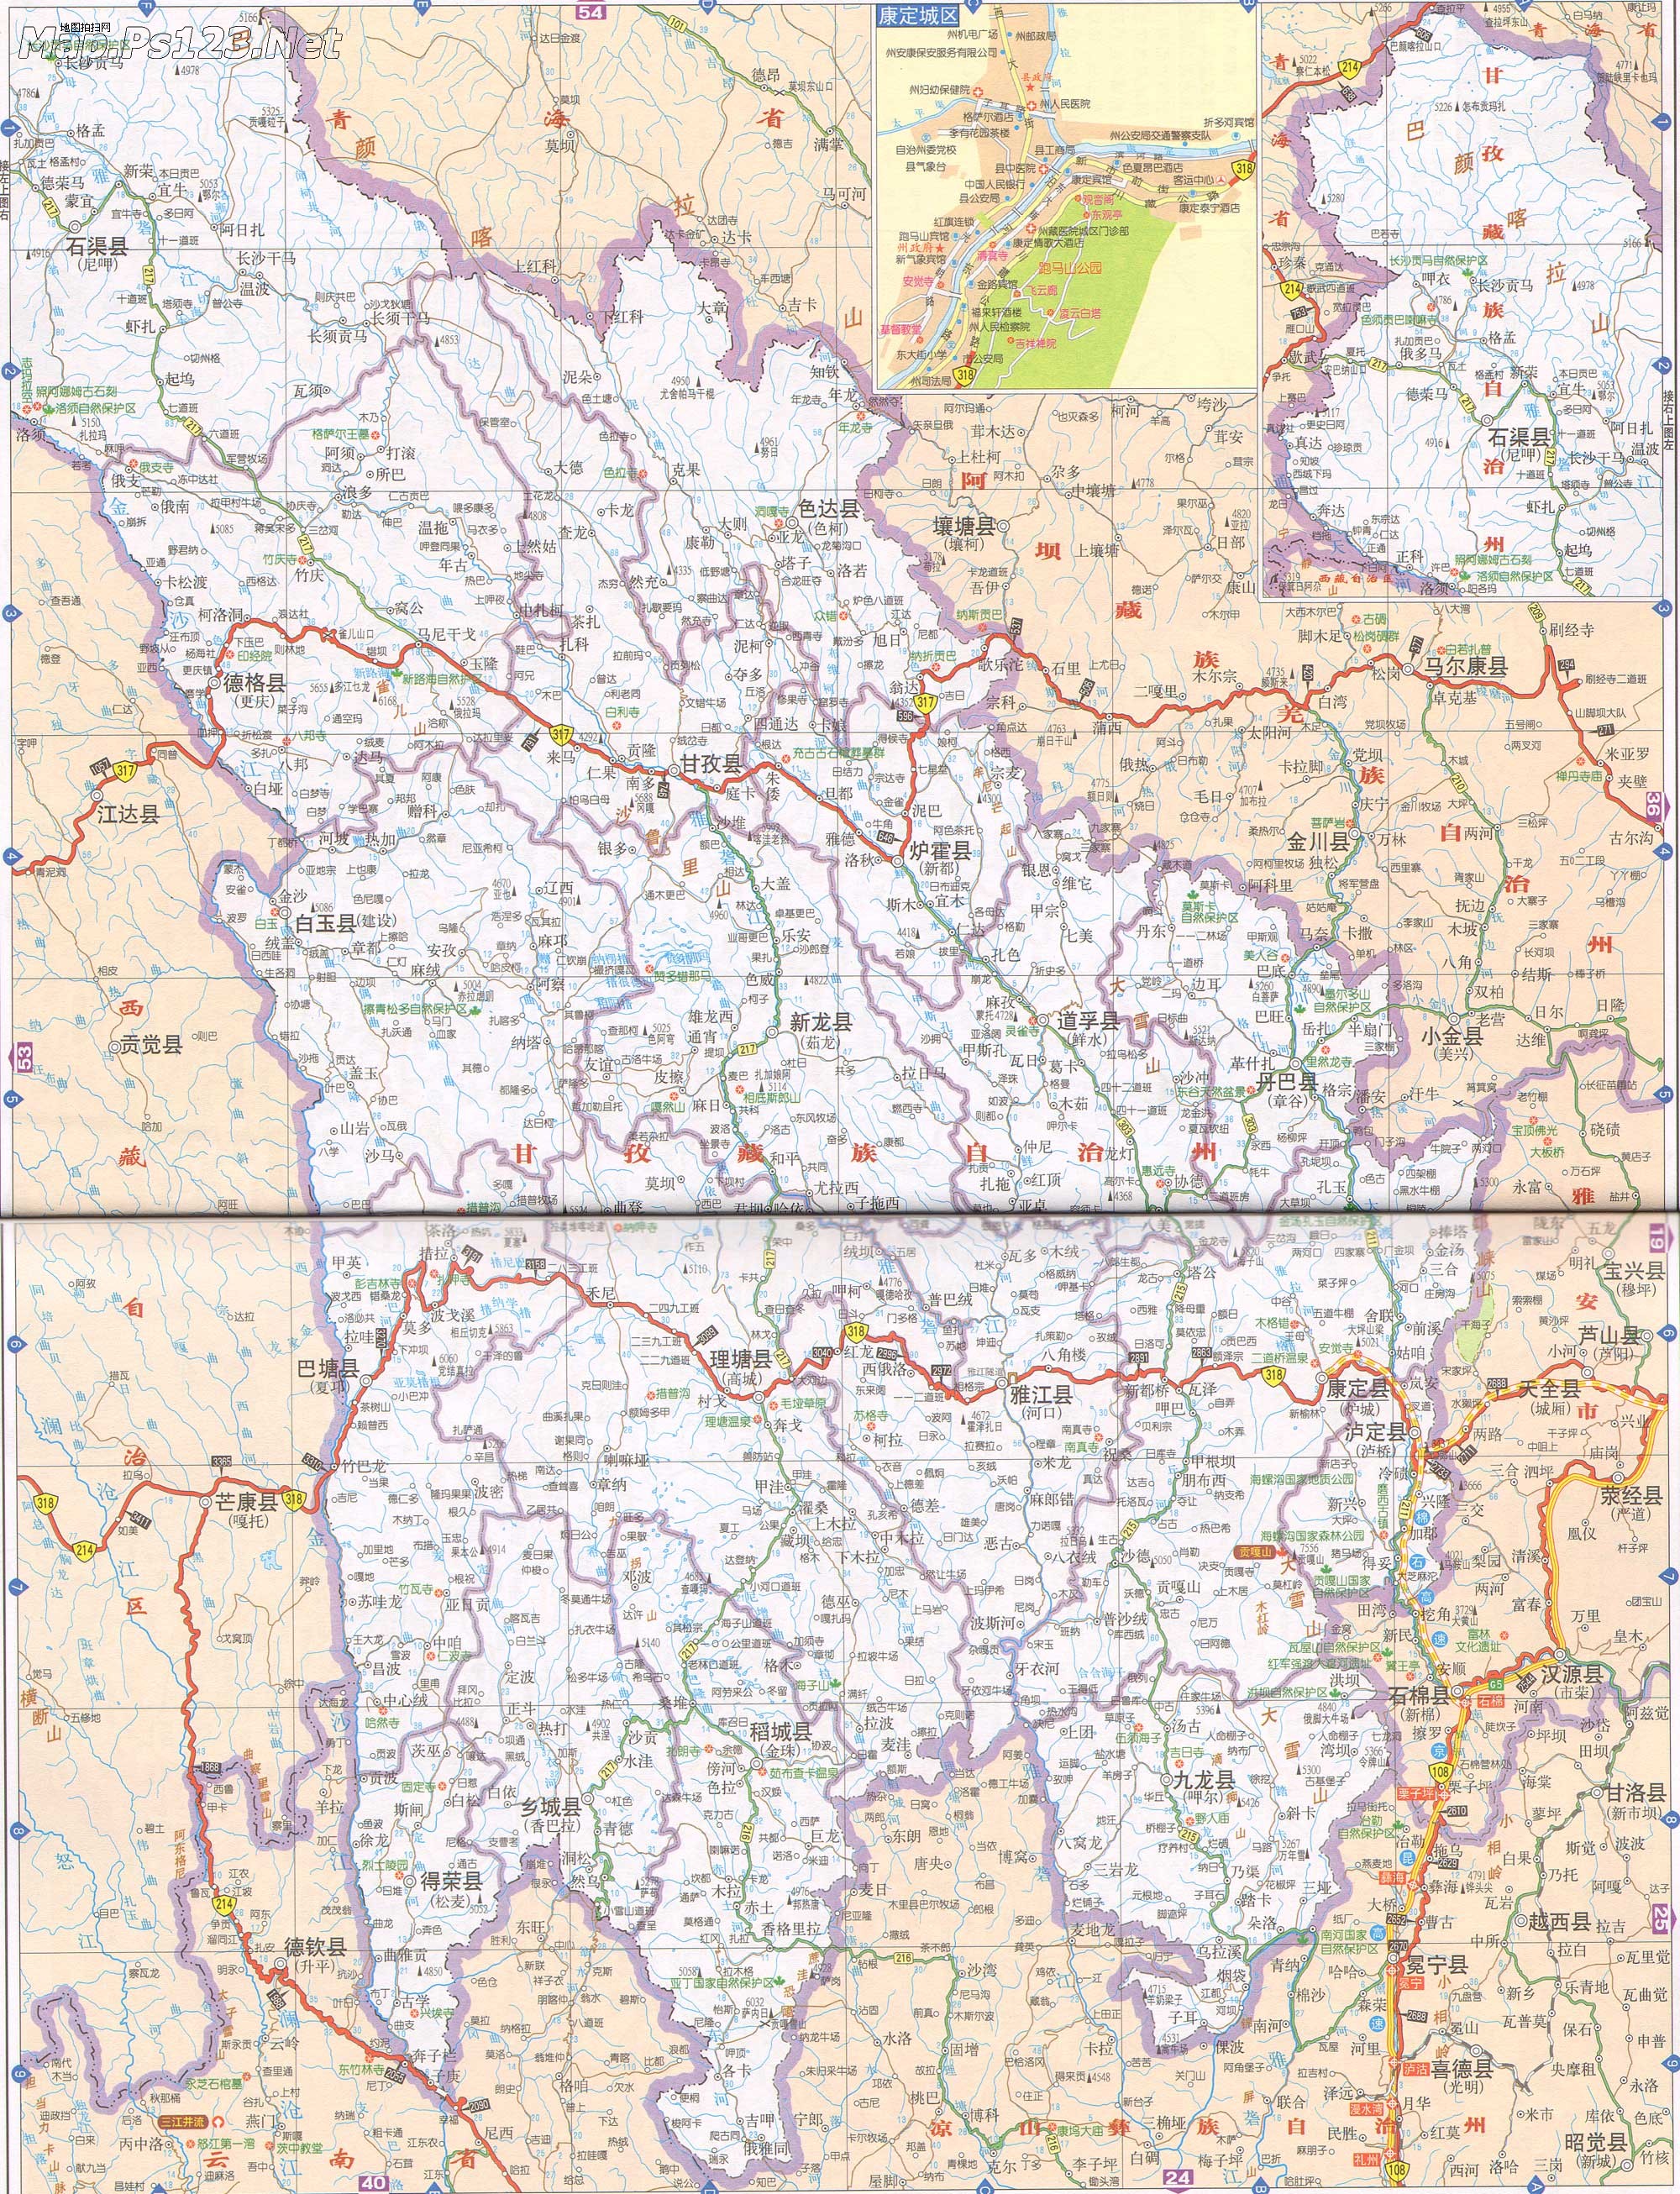 甘孜州 上一幅地图: 康定城区地图 | 甘孜州 | 下一幅地图: 巴塘县地图片